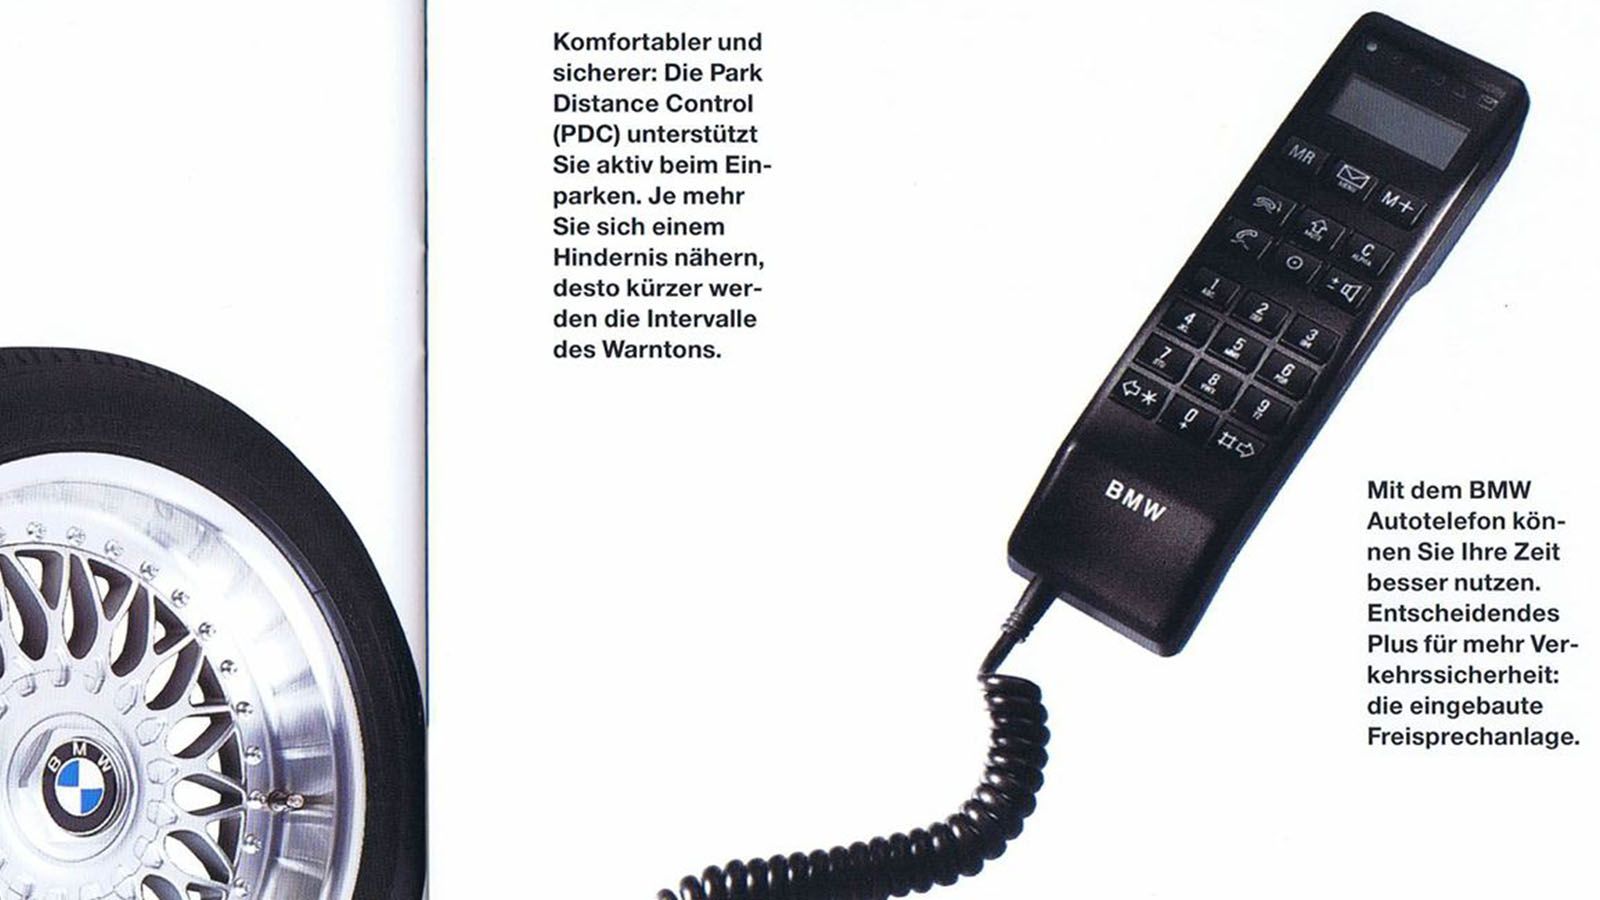 Сотовый телефон БМВ. Автотелефон Bosch. Telephone car игрушка. Радиотелефон до 7 километров.